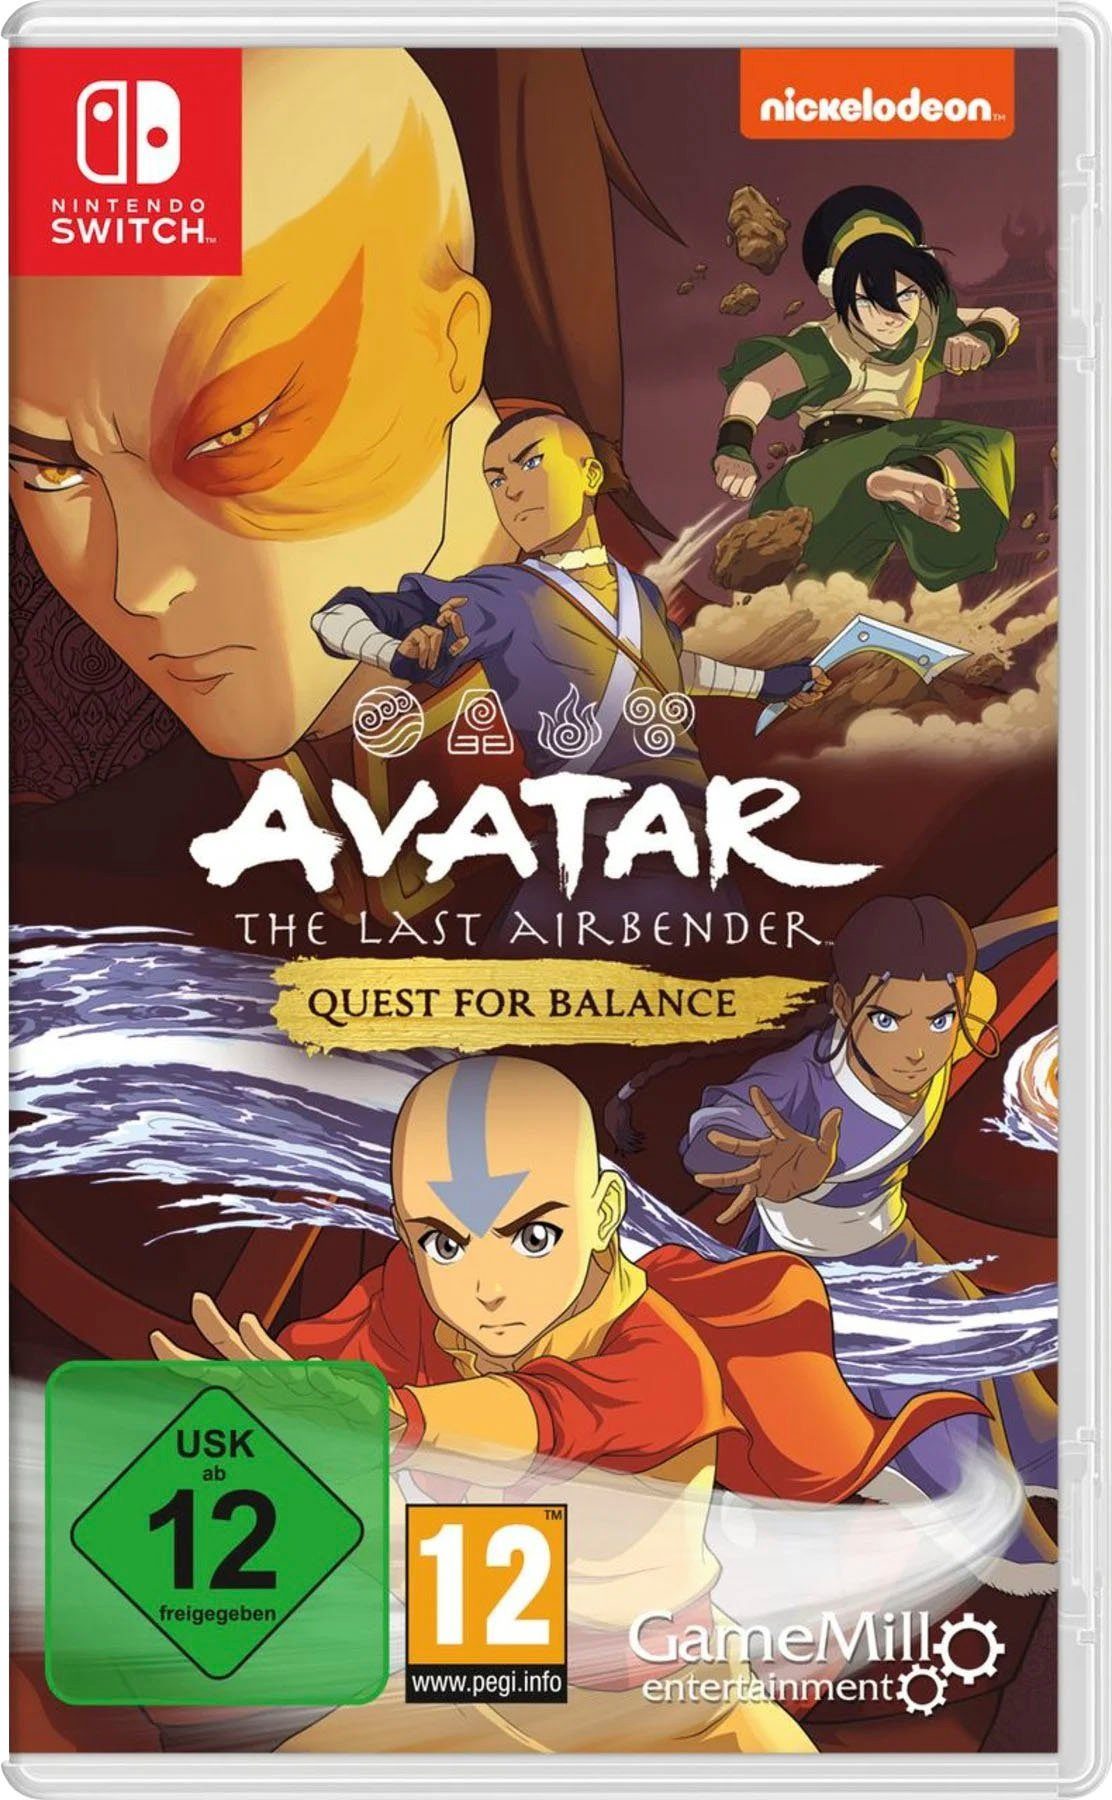 Last Avatar: Quest Switch, - Nintendo Airbender for The Erscheinungstermin Balance